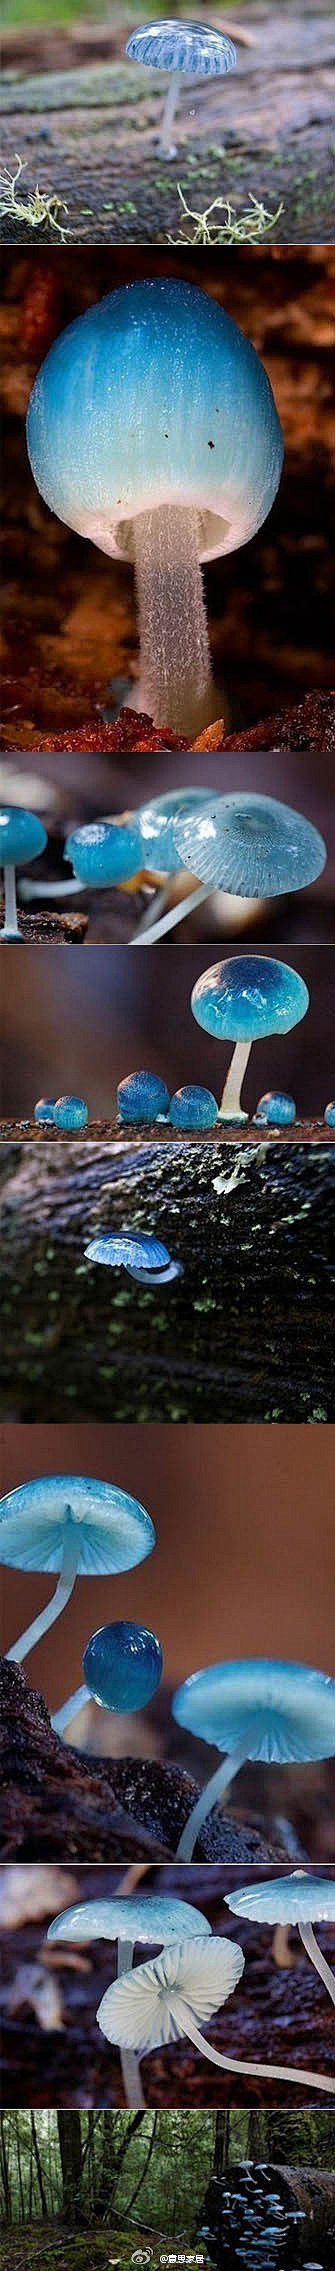 好唯美啊【精灵的梧桐-炫蓝蘑菇】产于澳大...